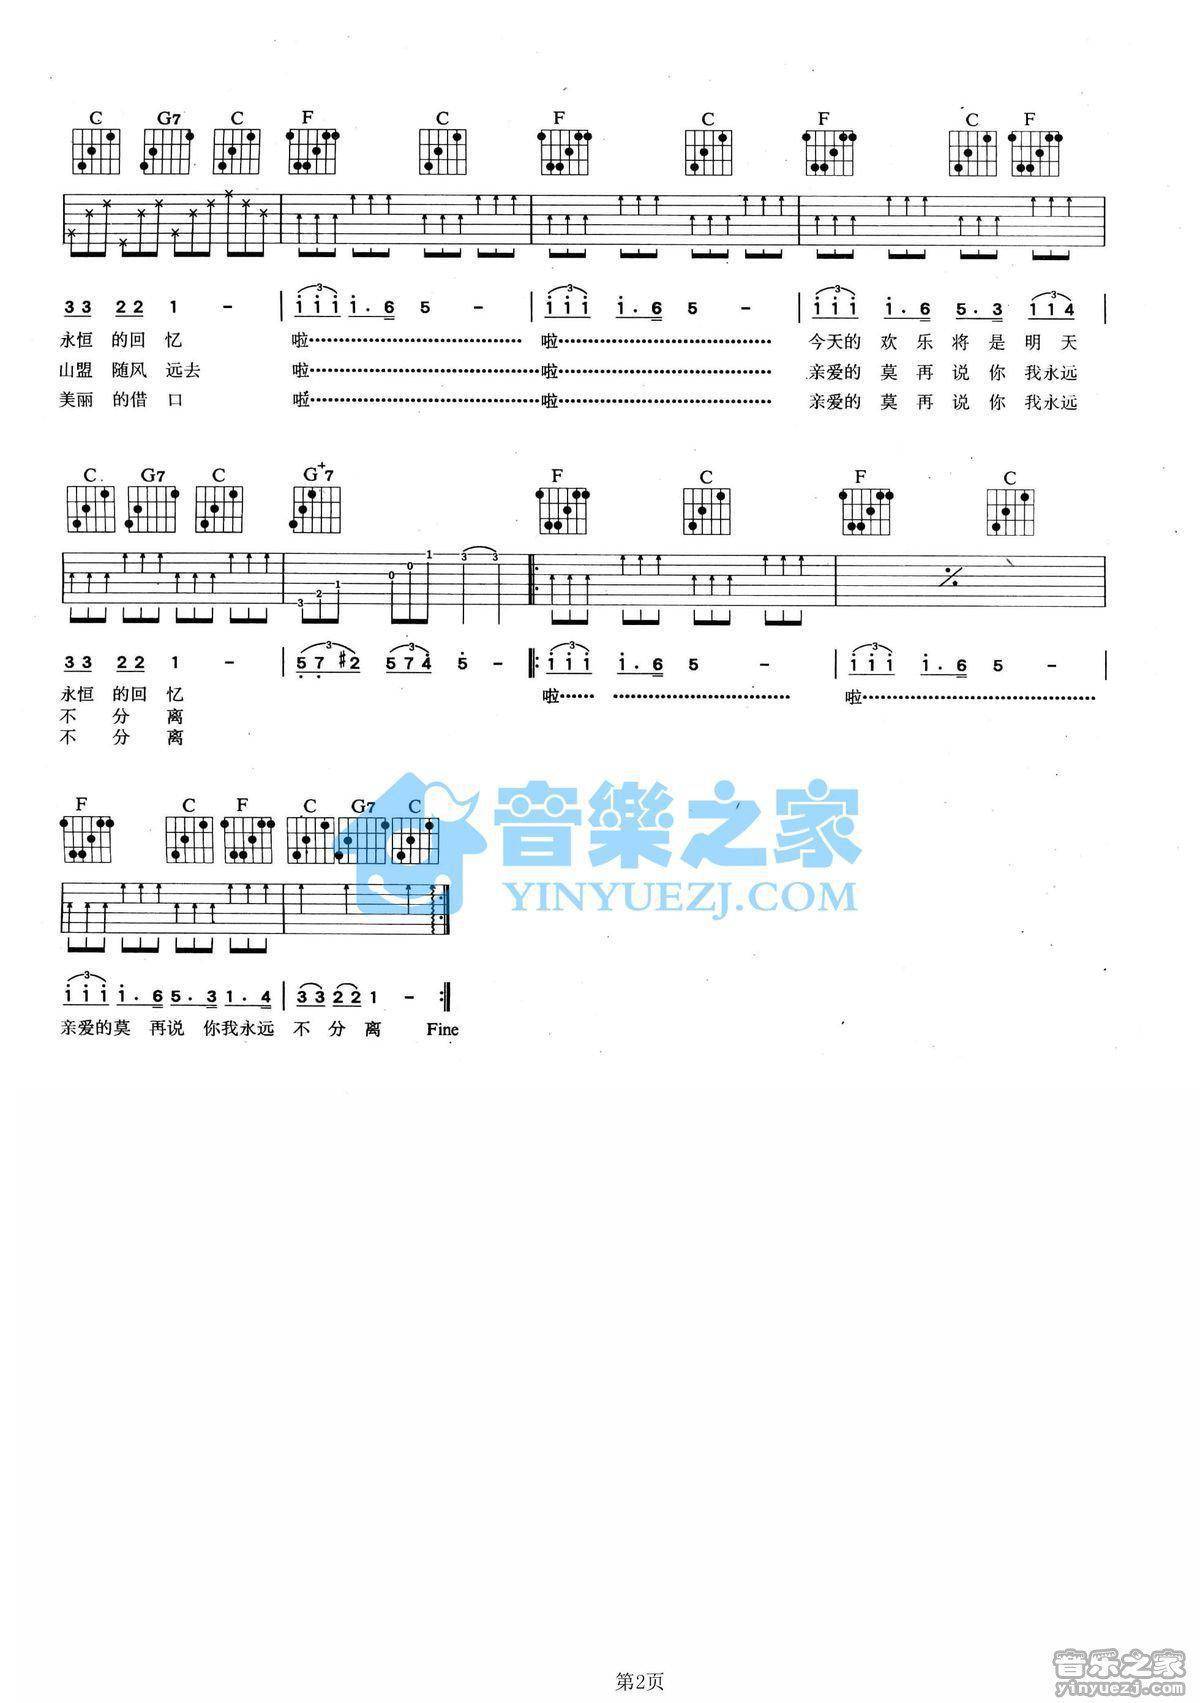 罗大佑 - 恋曲1980 [弹唱] 吉他谱